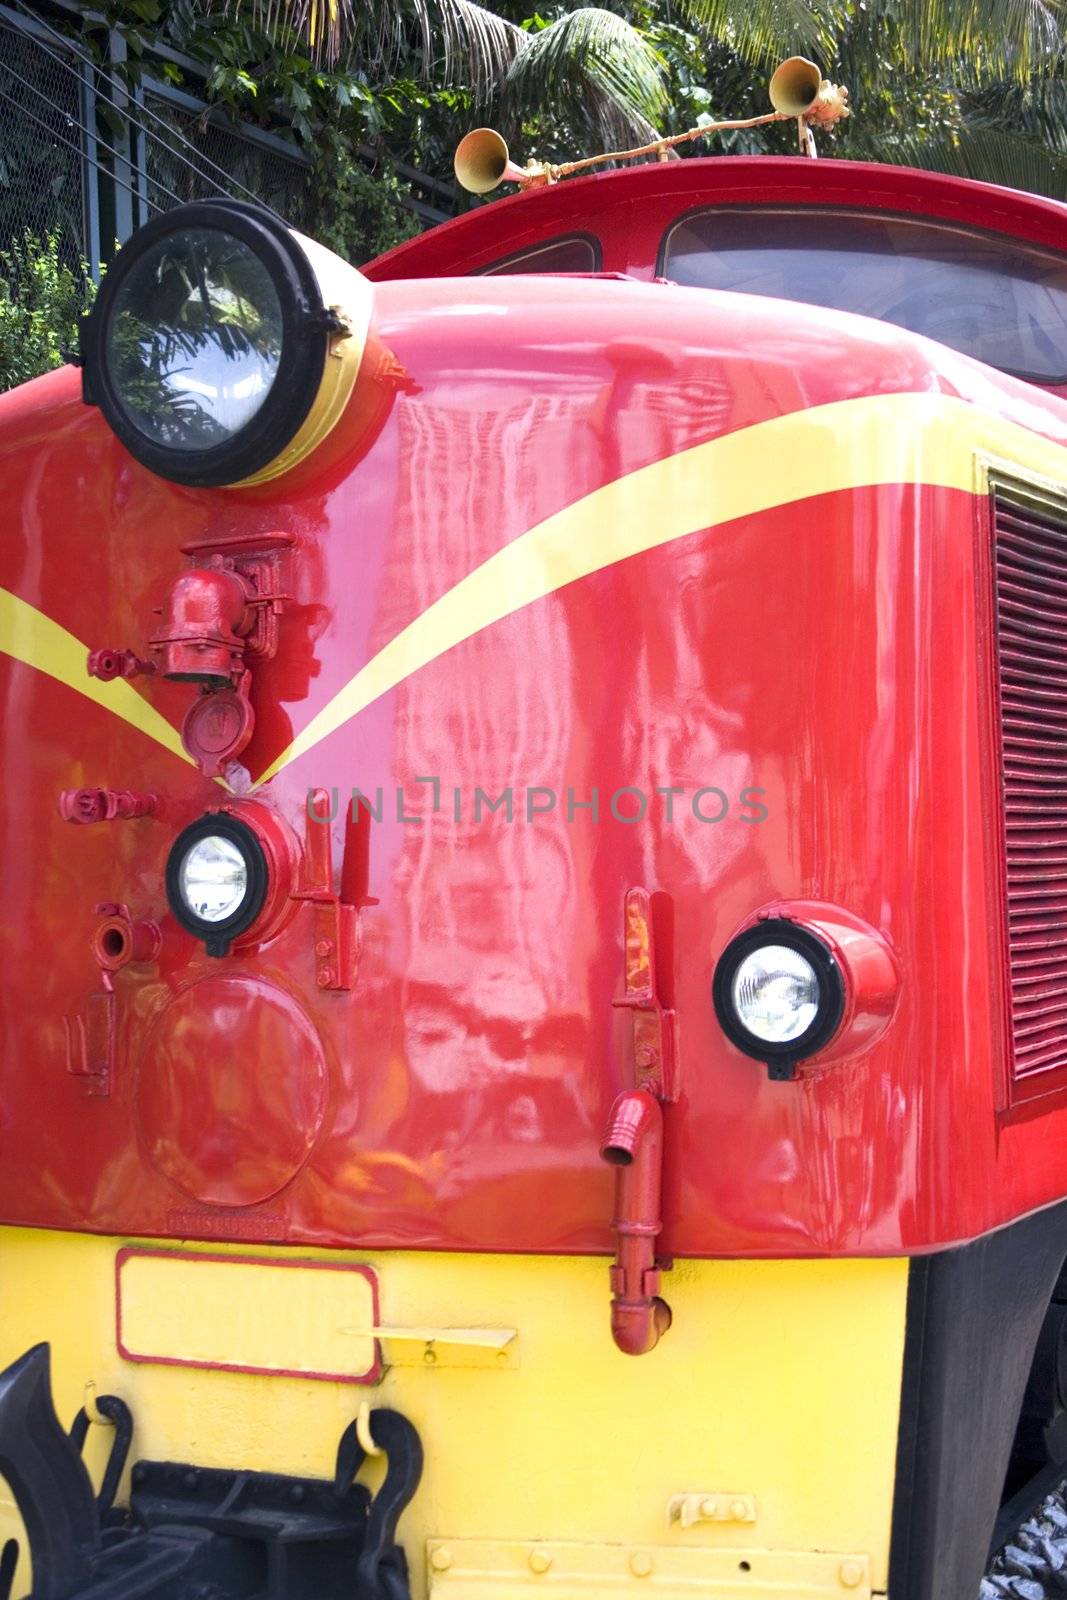 Vintage Diesel Train by shariffc